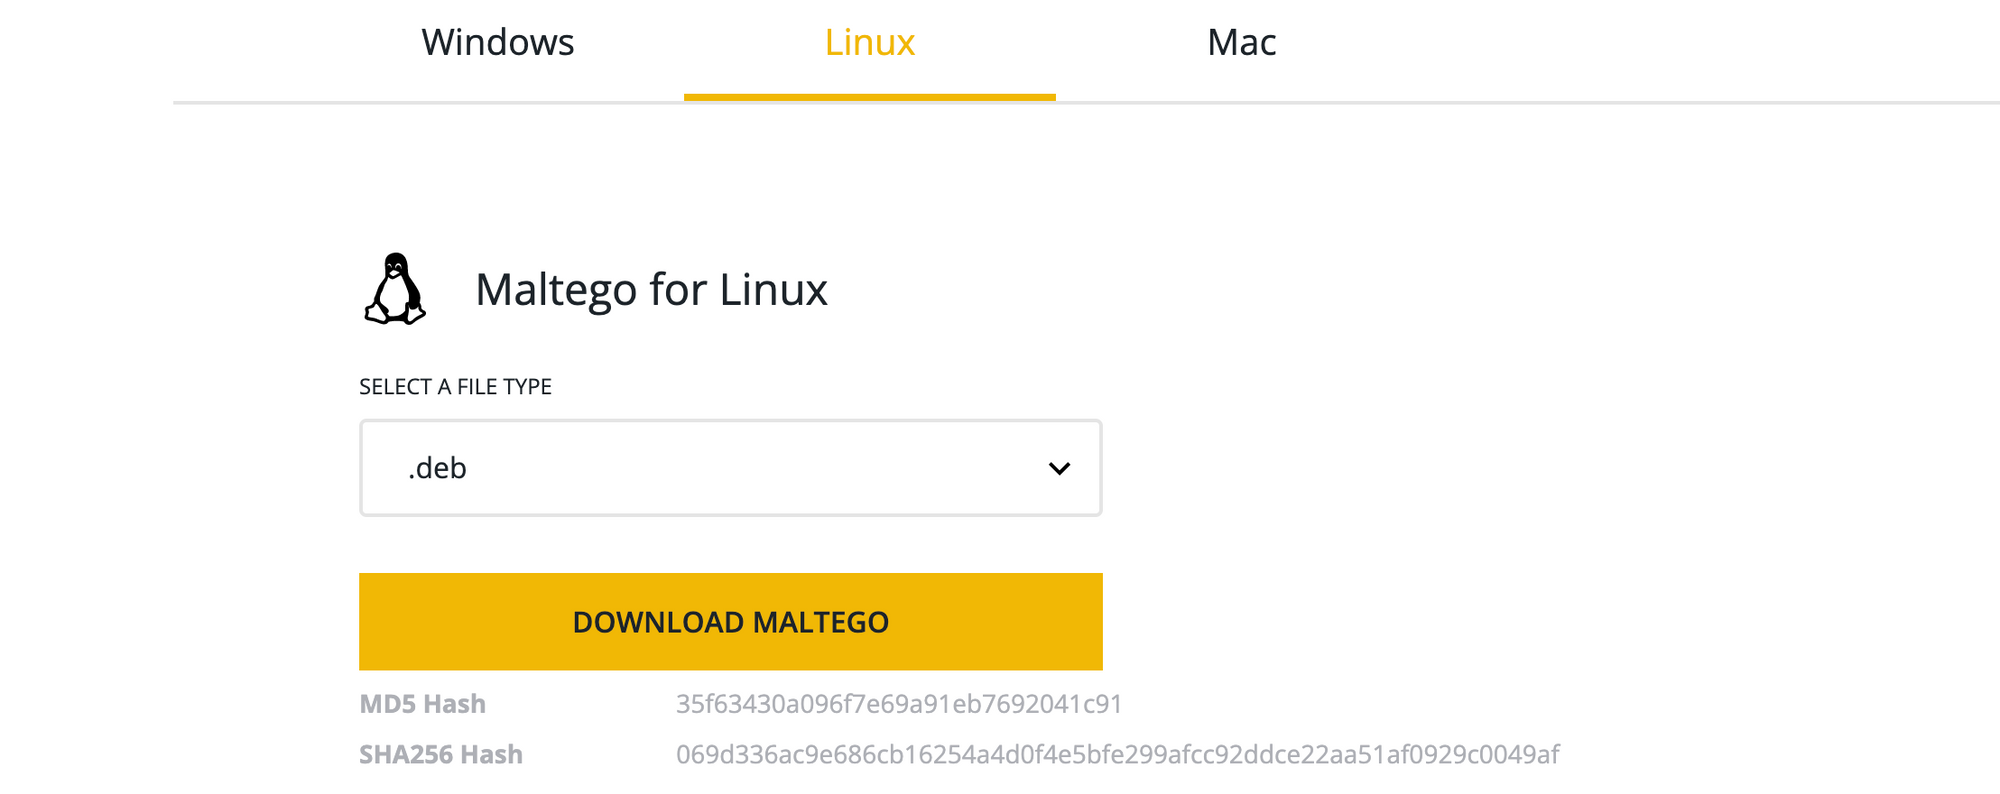 Download Maltego for Linux